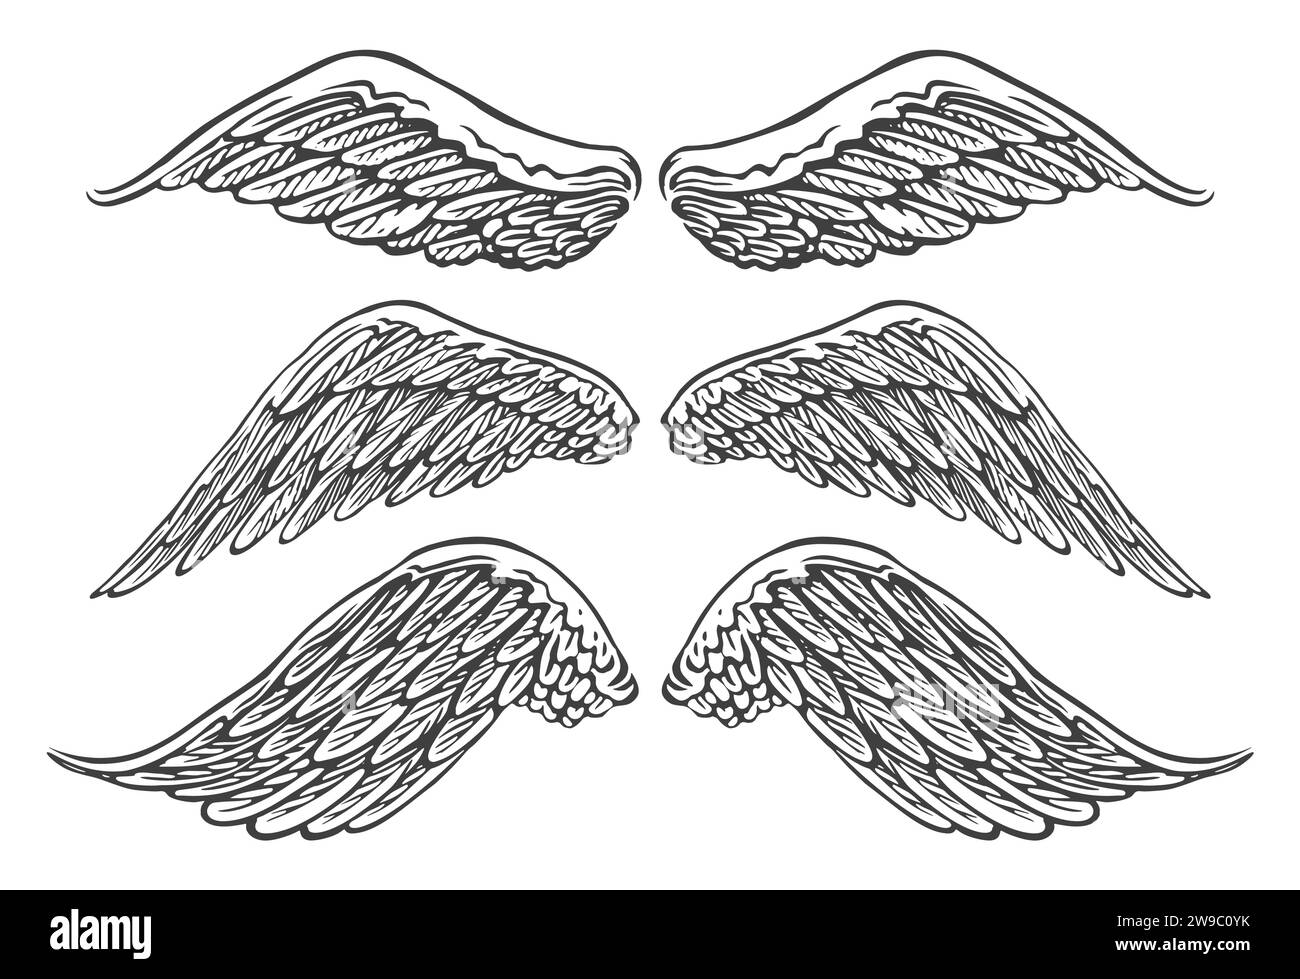 Flügel von Vögeln oder Engeln verschiedener Formen in offener Stellung. Handgezeichnete Skizze Vintage Vektor Illustration Stock Vektor